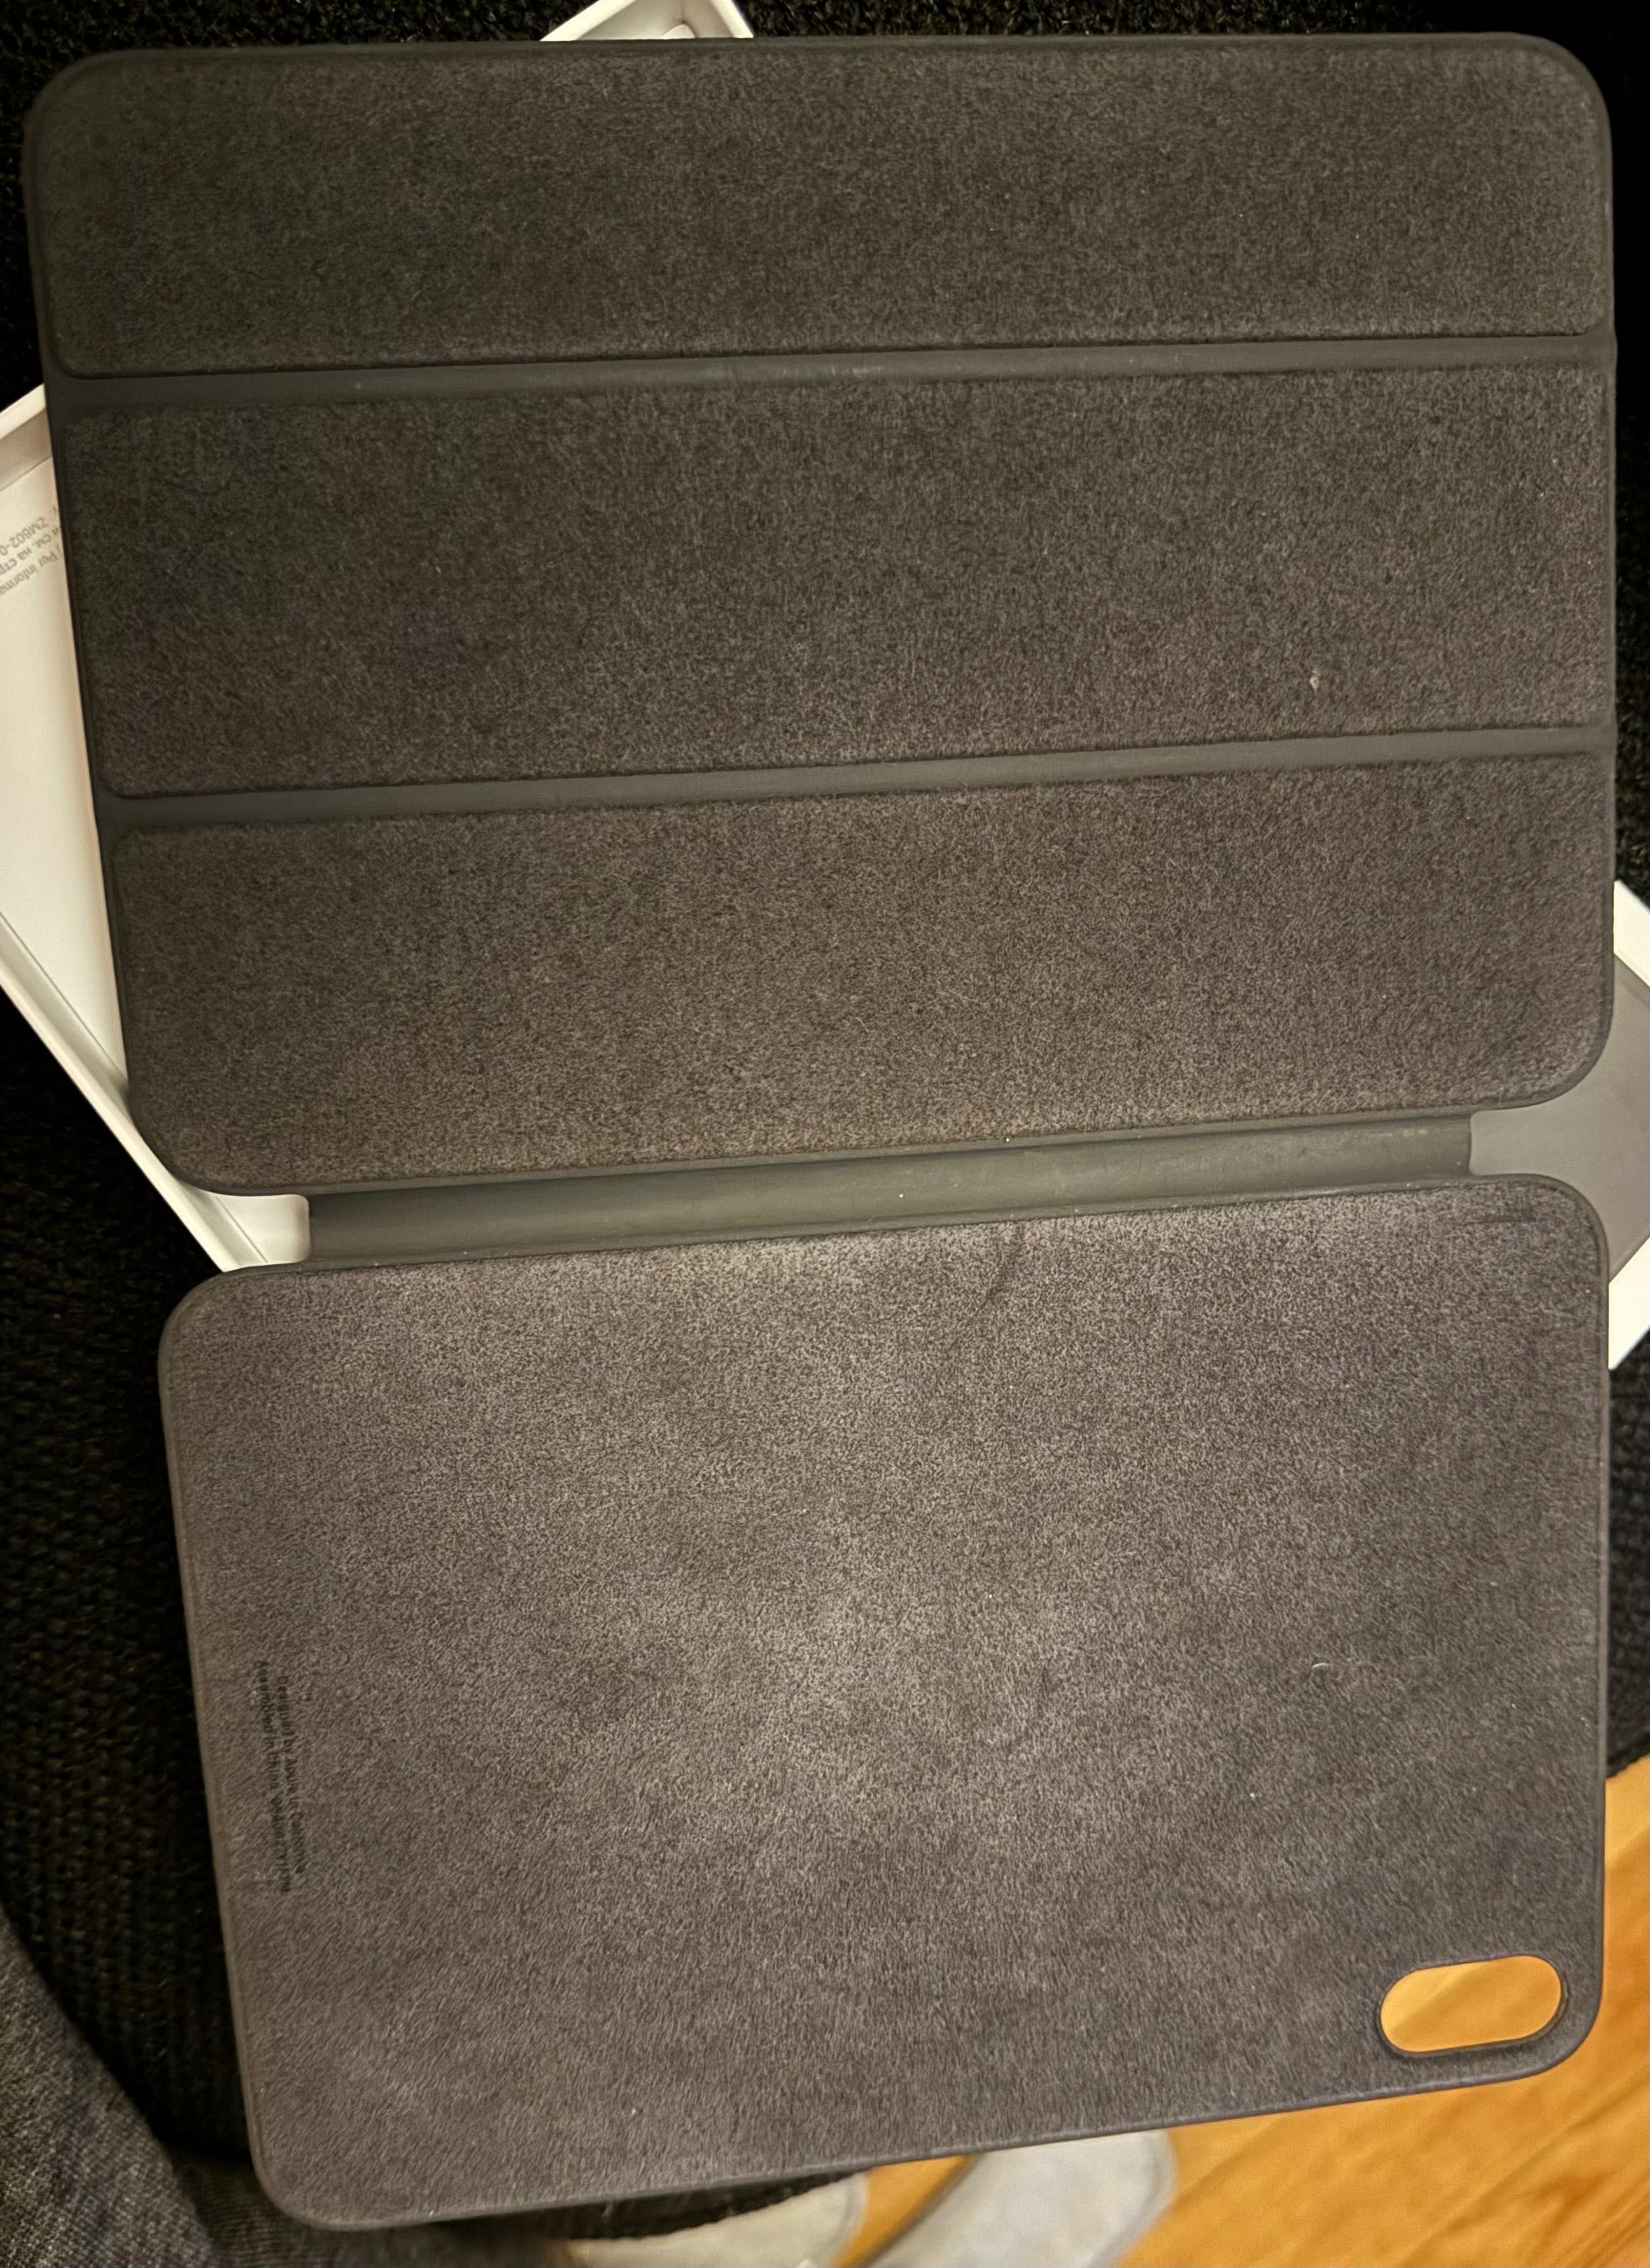 Apple capa iPad mini iFolio preta